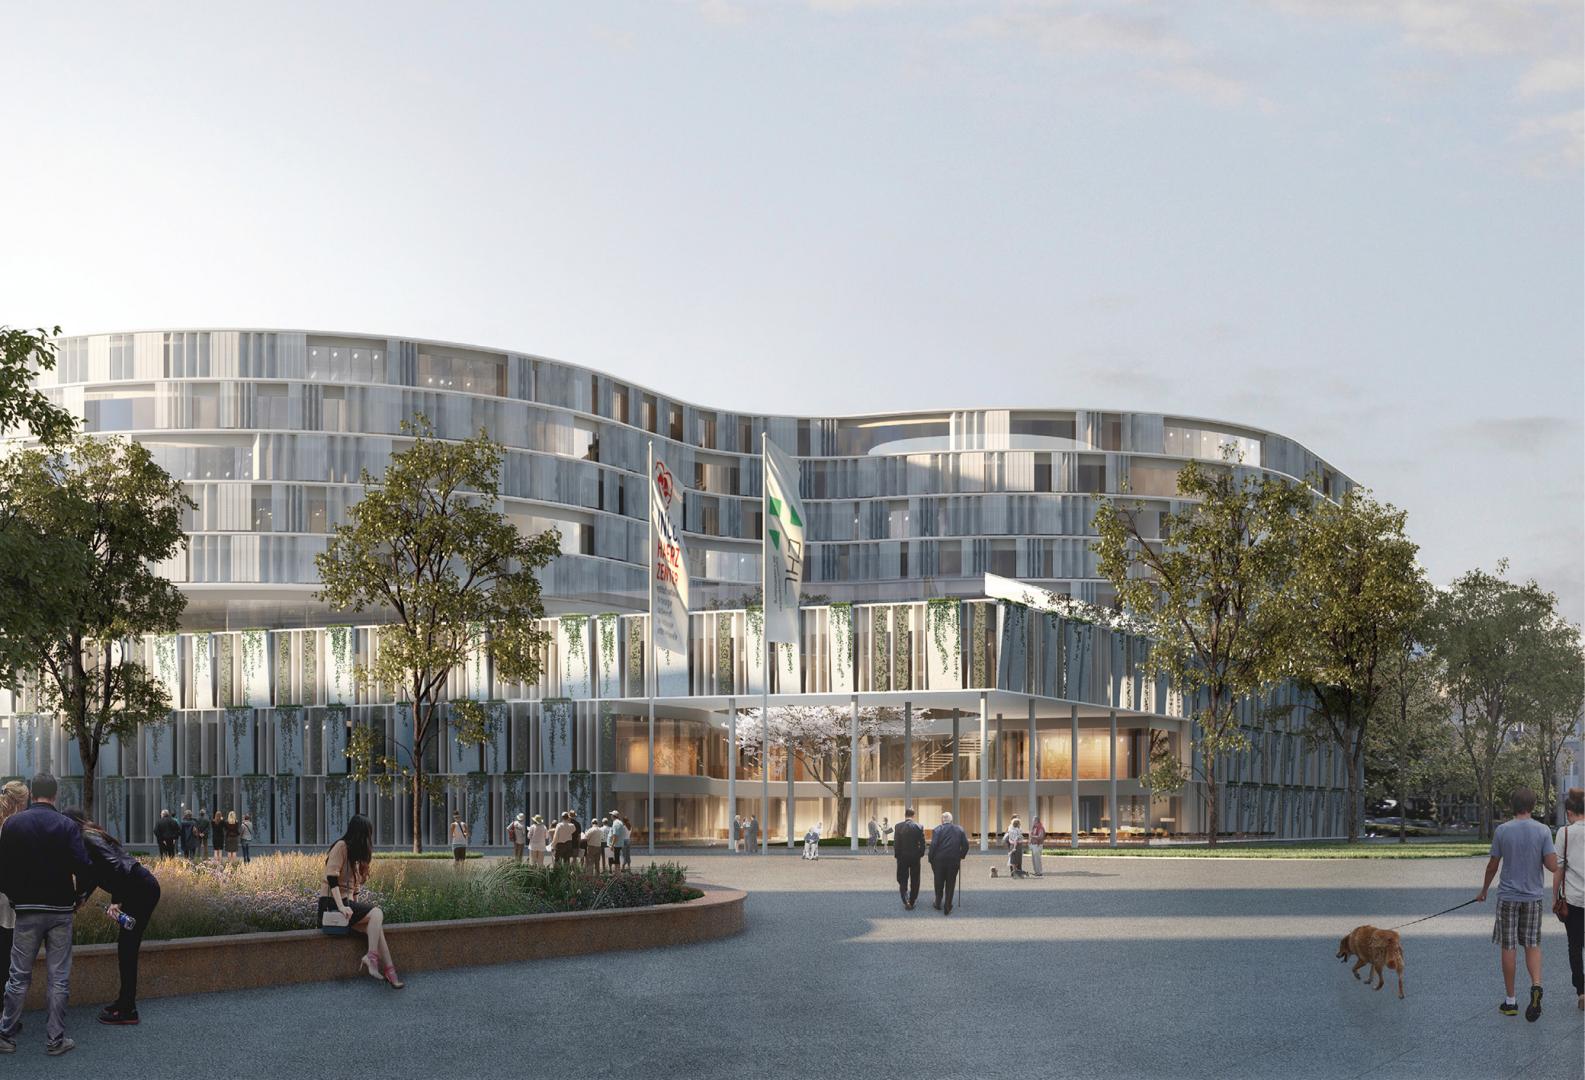 1 Centre Hospitalier de Luxembourg, concours avec Nickl & Partner Architekten Munich